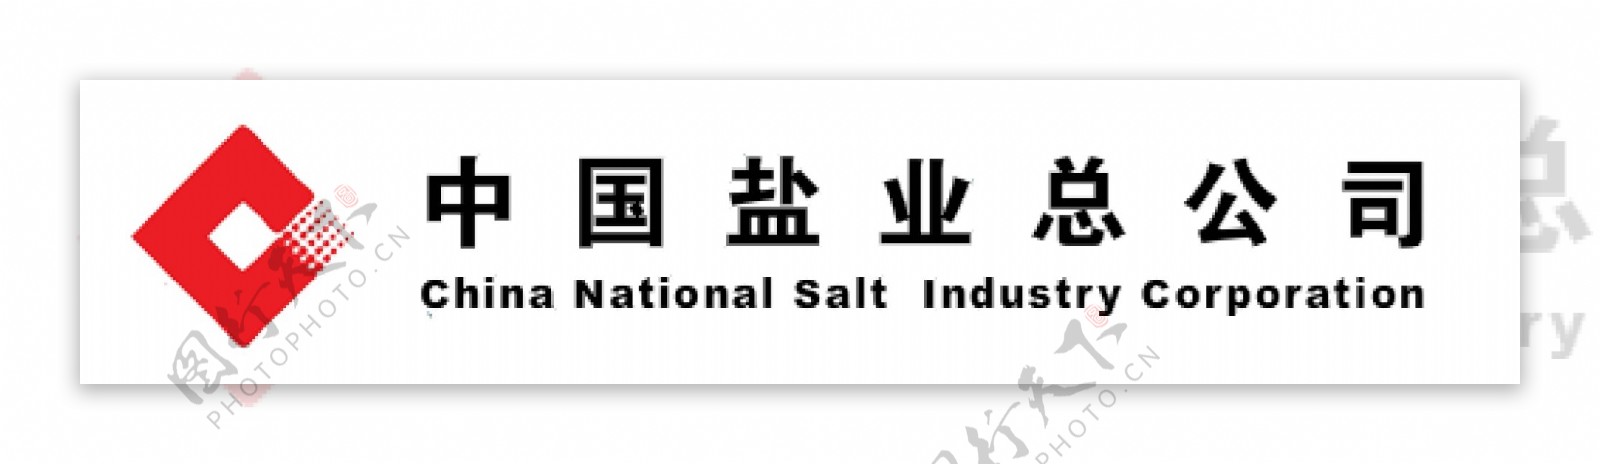 中国盐业总公司logo图片